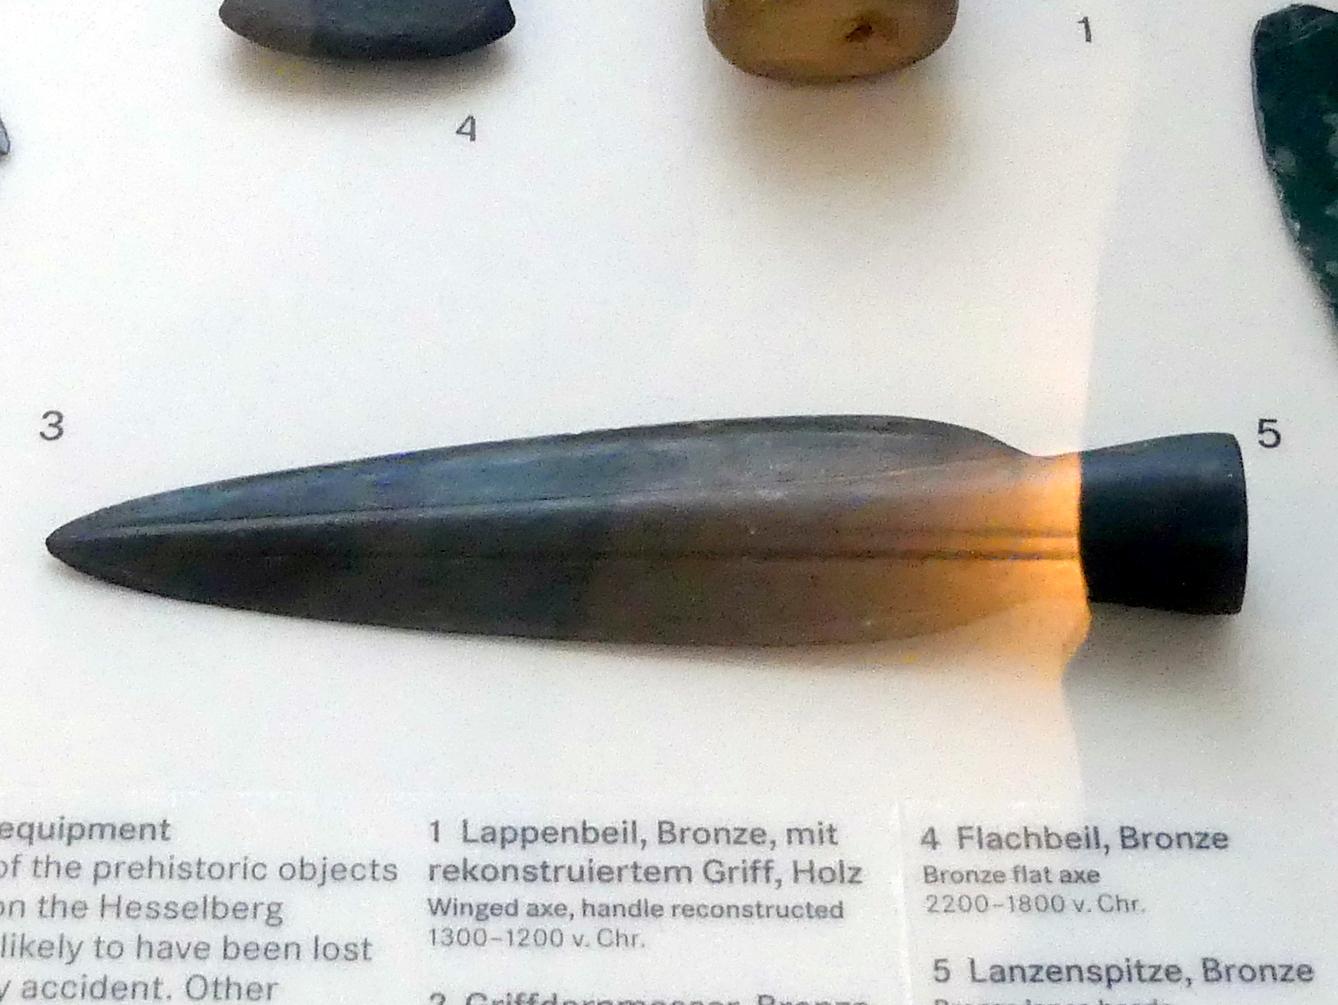 Lanzenspitze, Urnenfelderzeit, 1400 - 700 v. Chr., 1300 - 1200 v. Chr., Bild 1/2